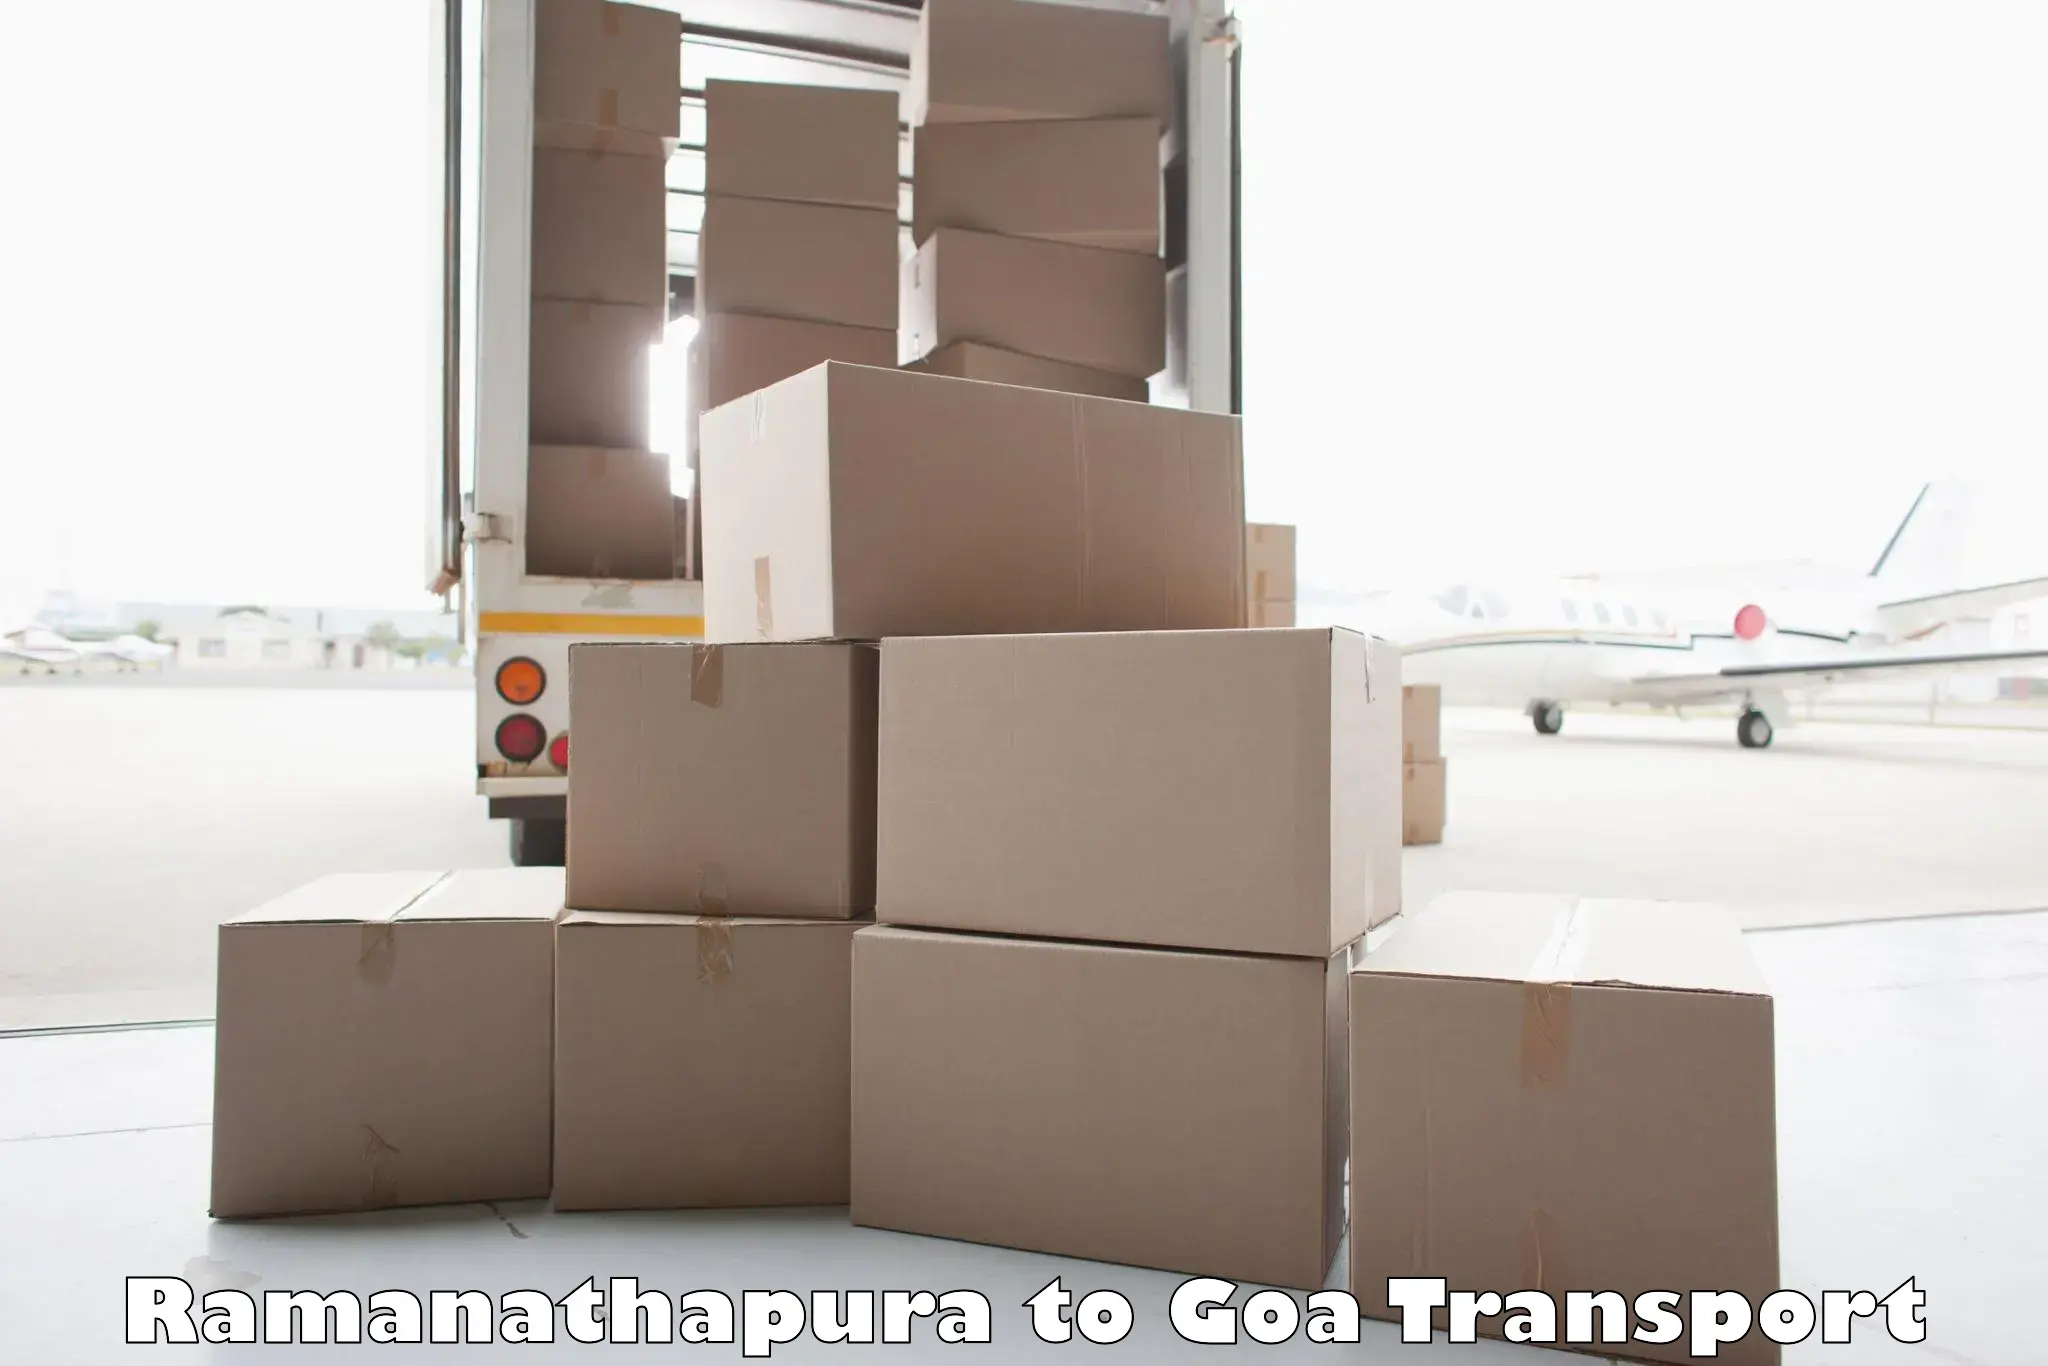 Two wheeler parcel service in Ramanathapura to Goa